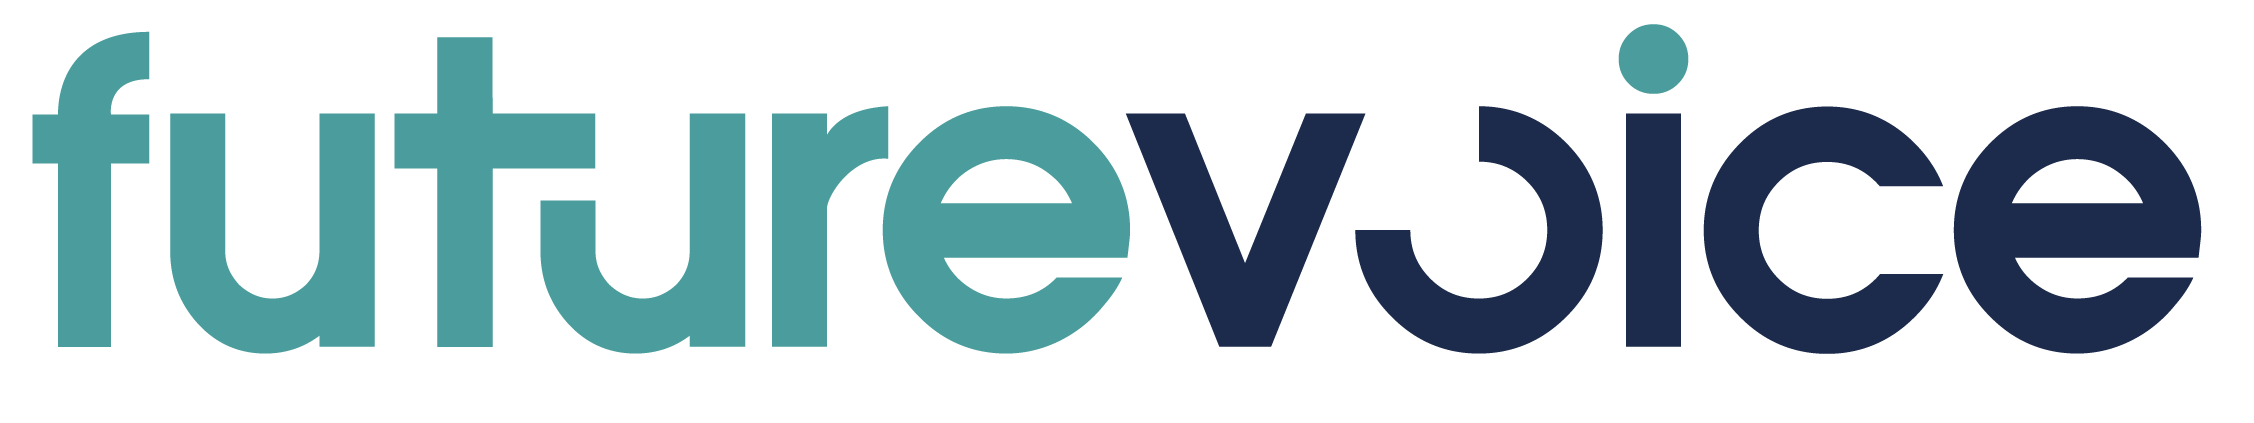 FV-logos